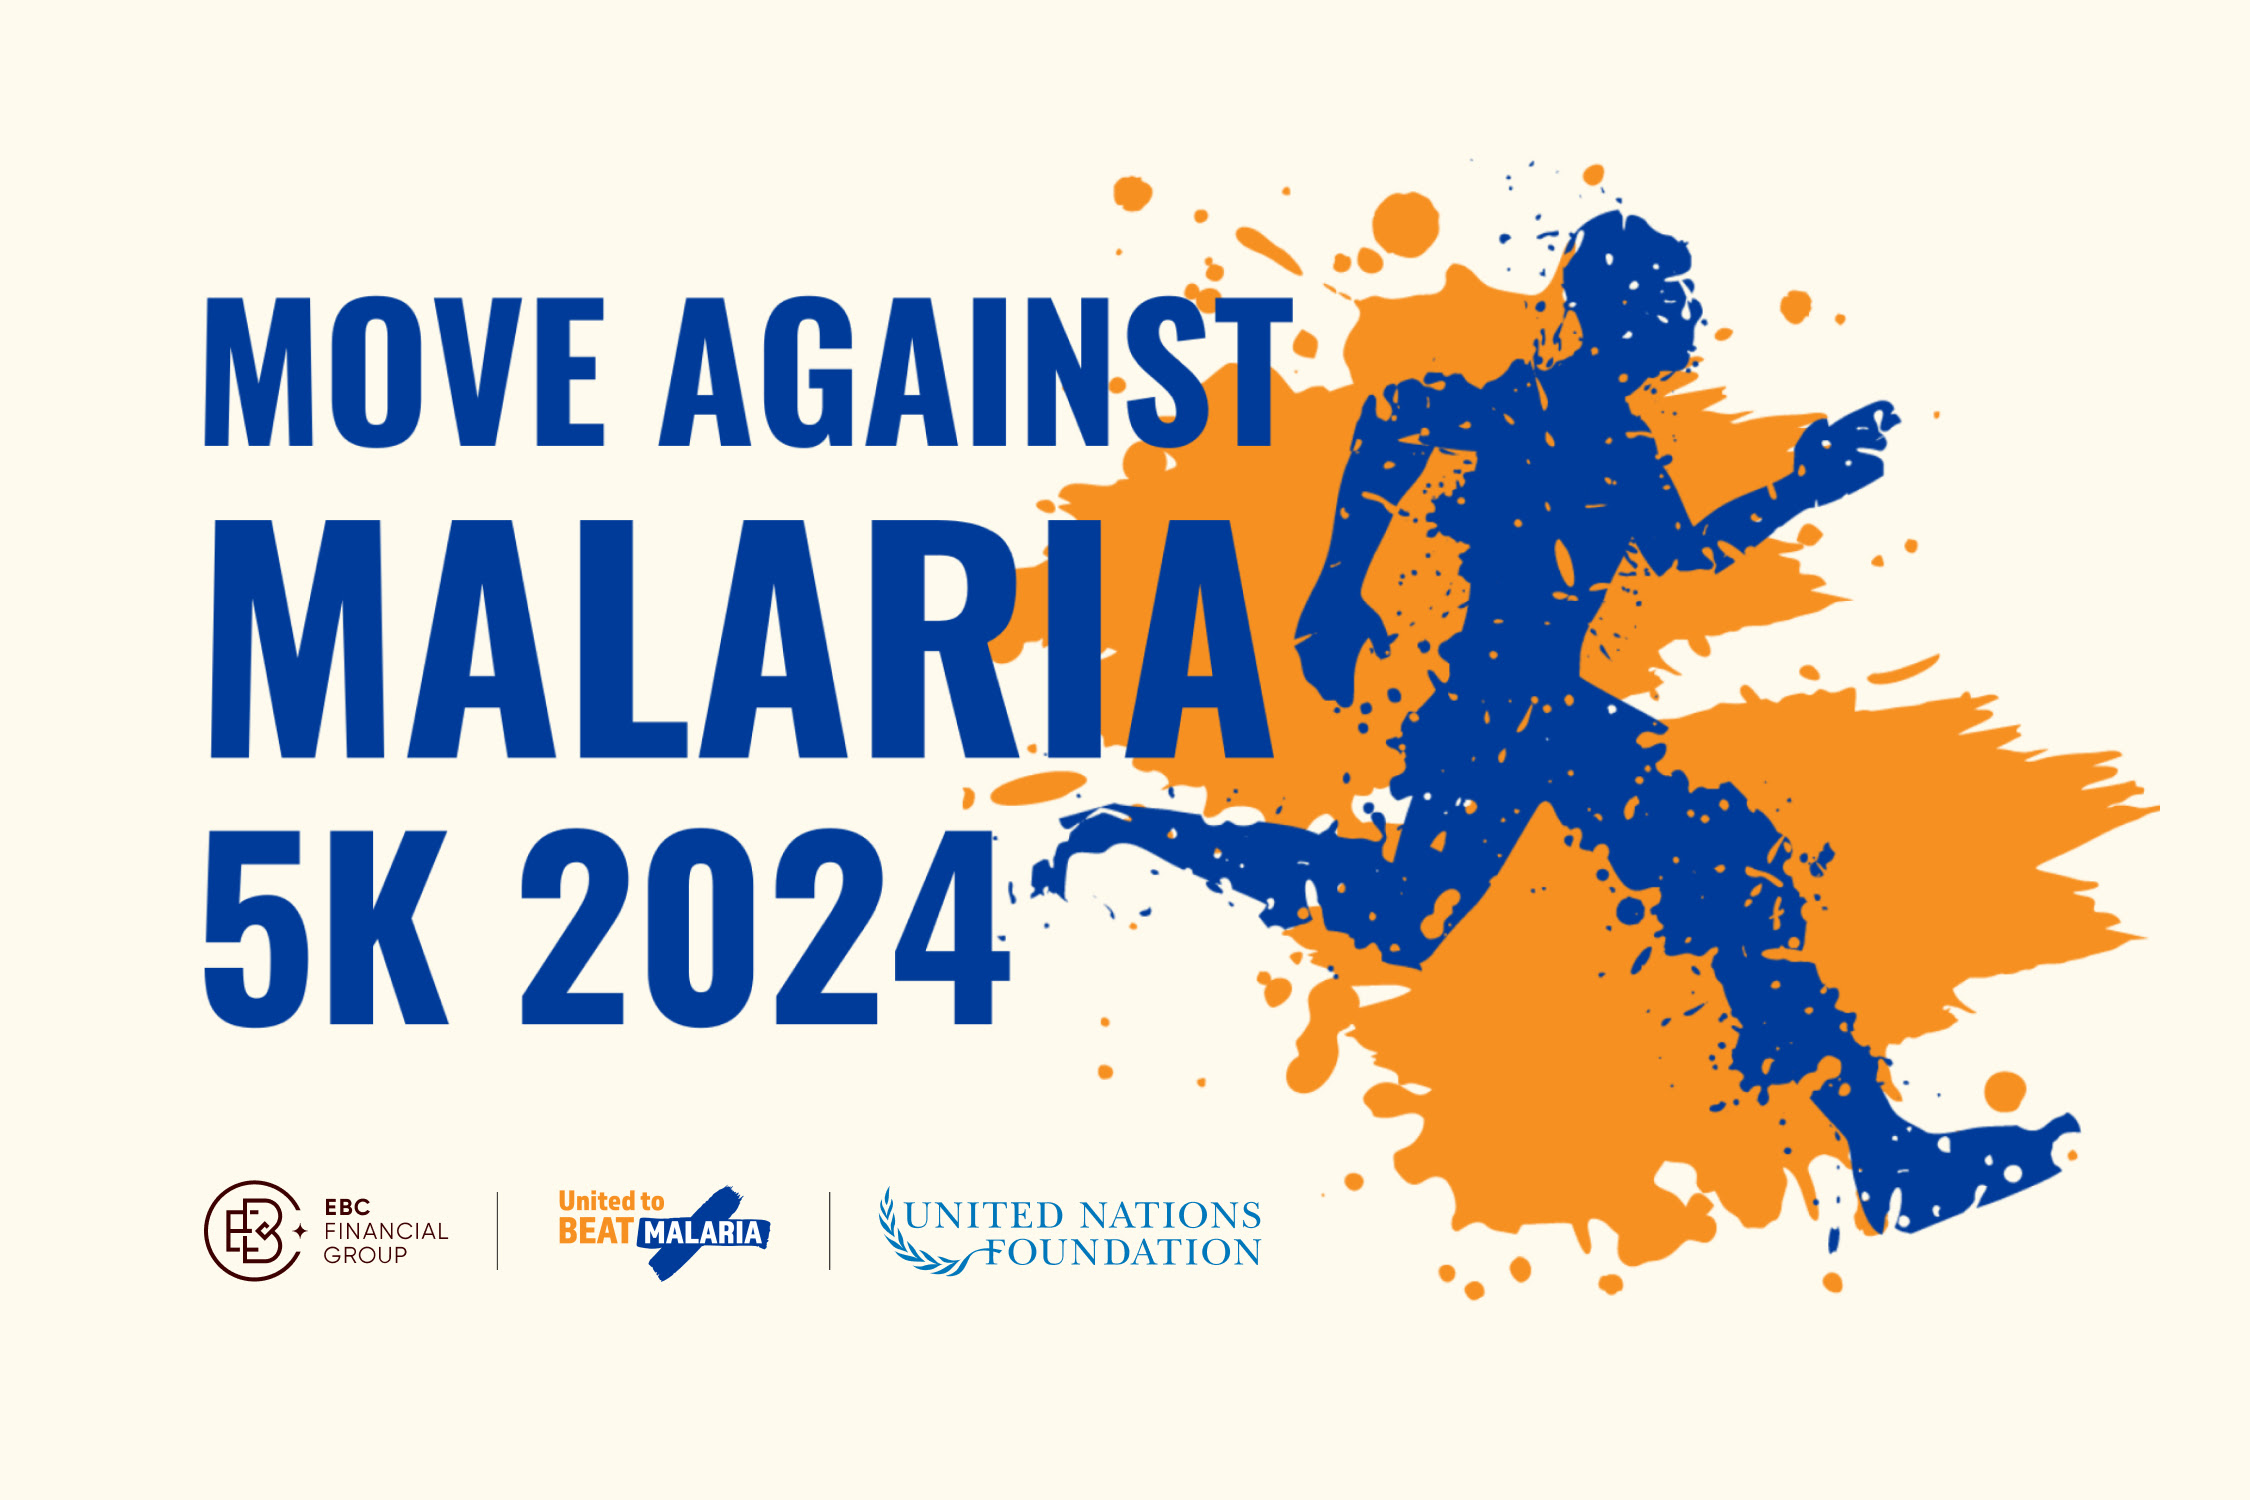 ตั้งแต่วันที่ 25 เมษายน - 5 พฤษภาคม 2024 เข้าร่วมกับผู้สนับสนุนทั่วโลกสำหรับกิจกรรมต่อต้านโรคมาลาเรีย ซึ่งเป็นกิจกรรมเสมือนเพื่อสร้างความตระหนักรู้ และระดมทุนเพื่อสนับสนุนการจัดหาเครื่องมือและโปรแกรมการรักษาโรคมาลาเรียที่ช่วยชีวิตได้